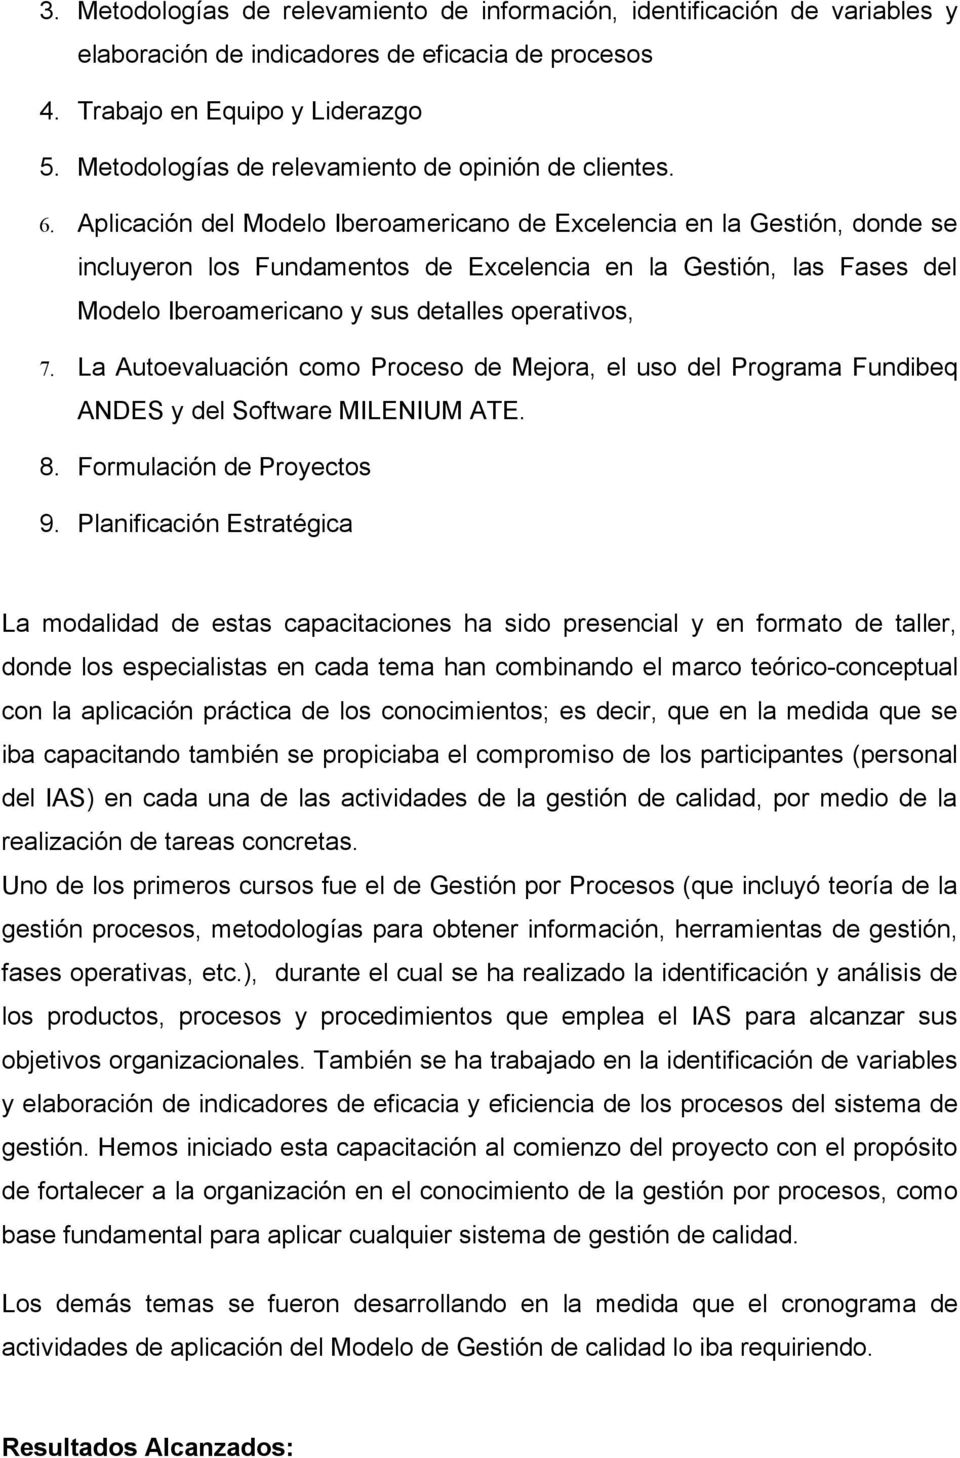 Aplicación del Modelo Iberoamericano de Excelencia en la Gestión en la  Administración Pública de la Provincia de Formosa - PDF Descargar libre